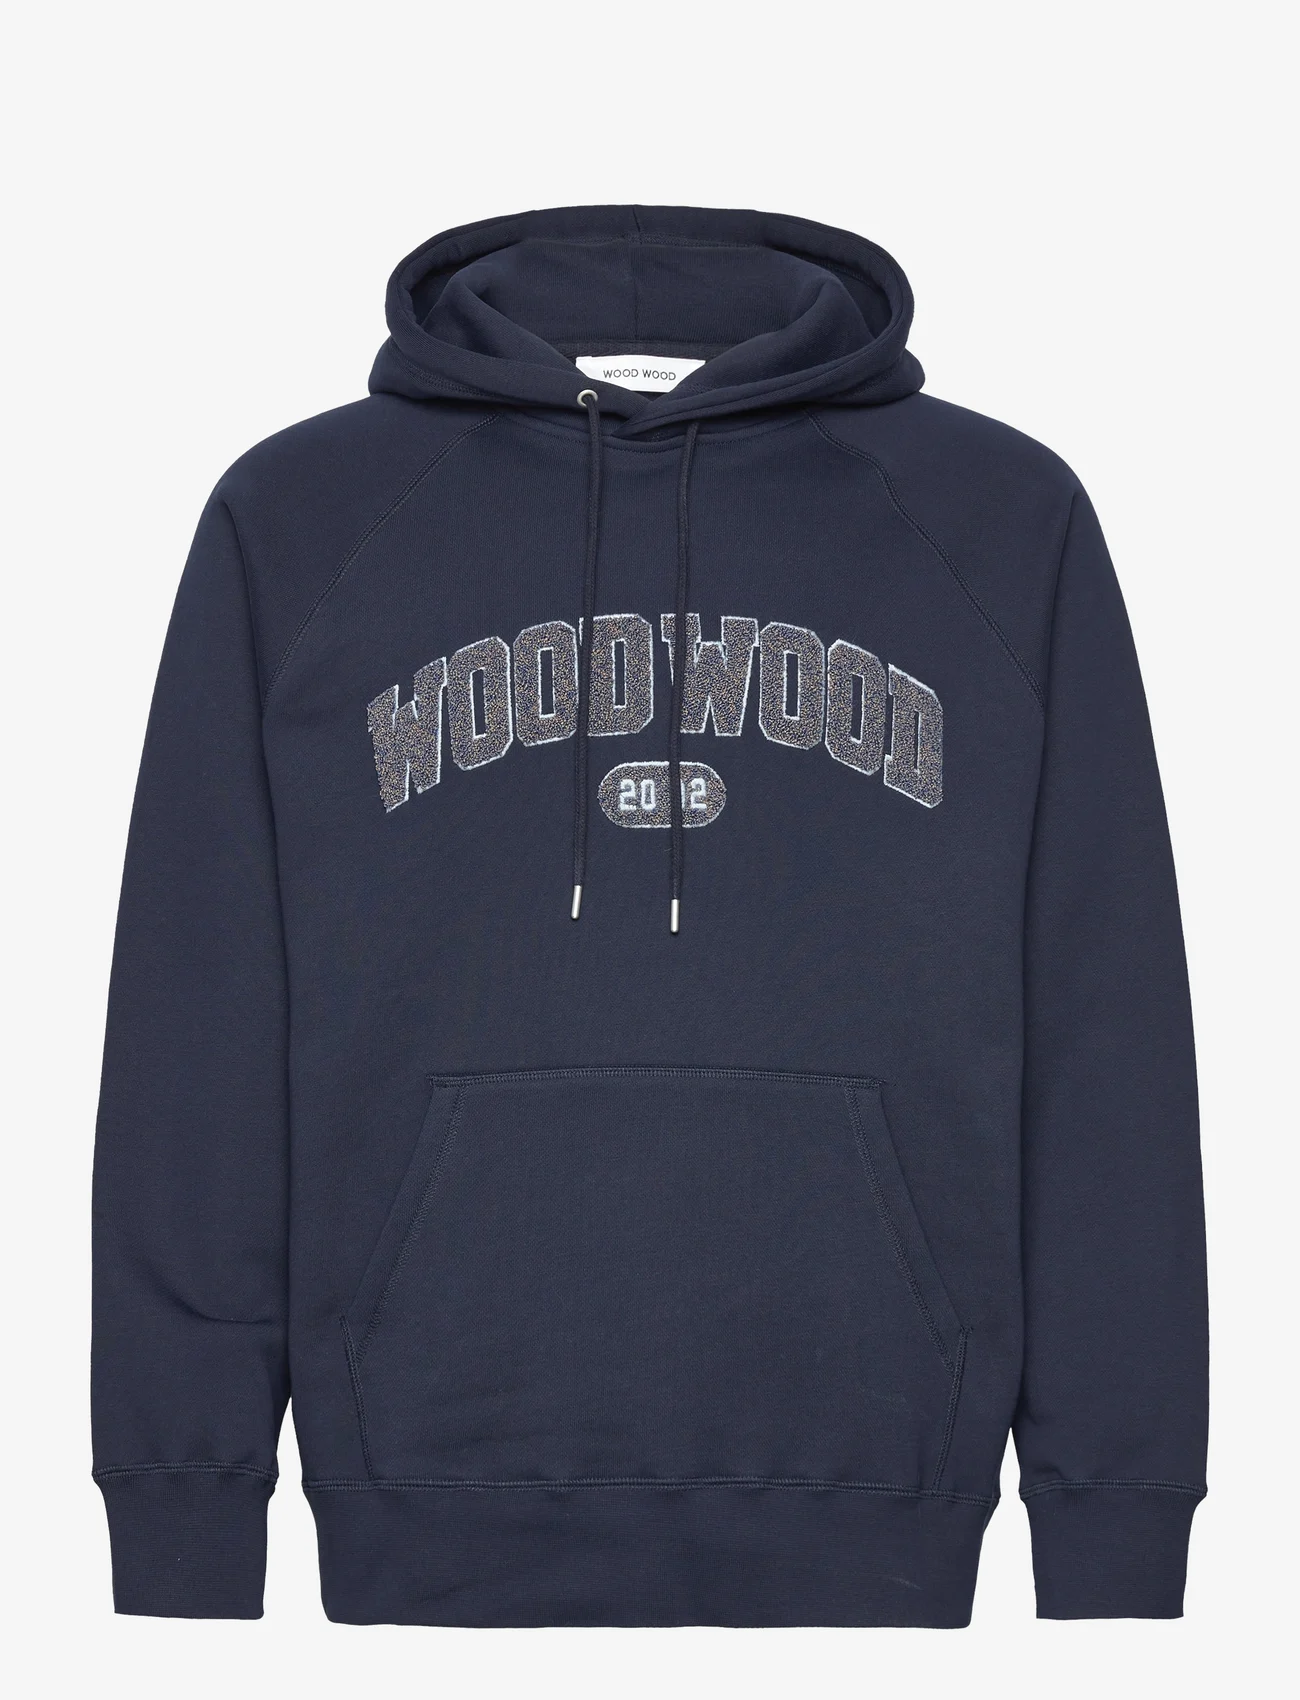 Wood Wood - Fred IVY hoodie - hoodies - navy - 0